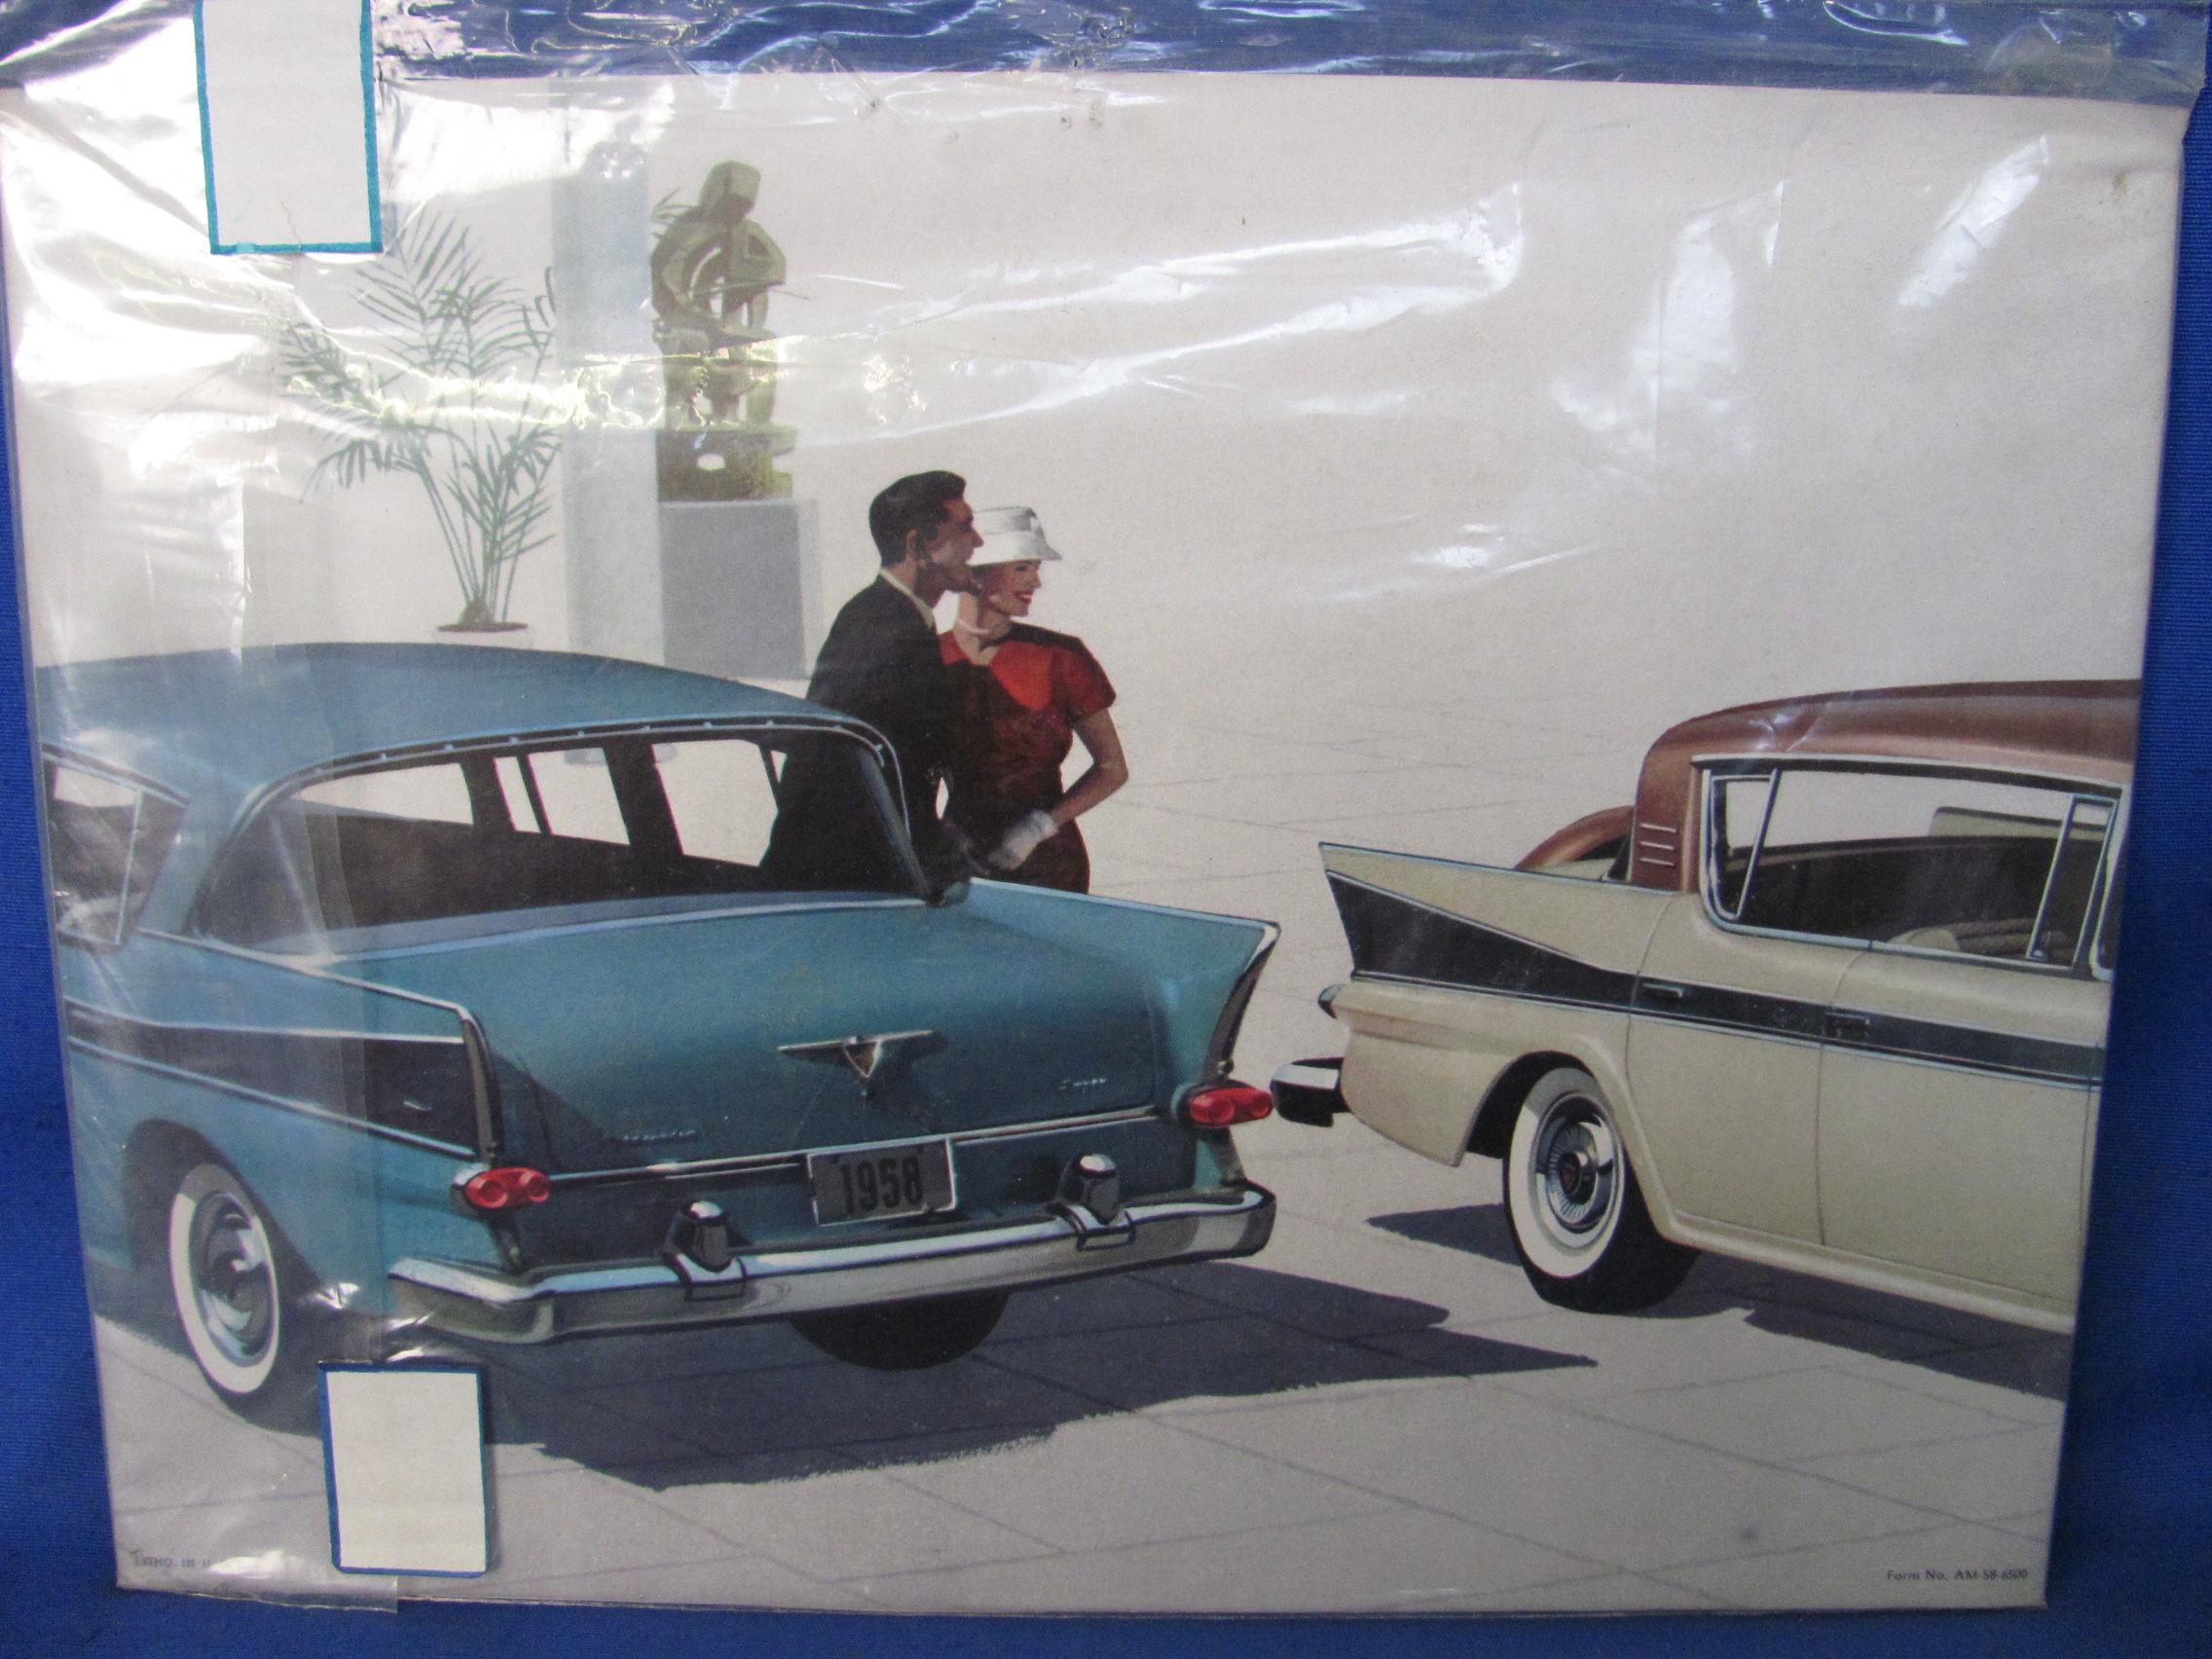 1958 Rambler Original Car Dealer Sales Brochure / Catalog